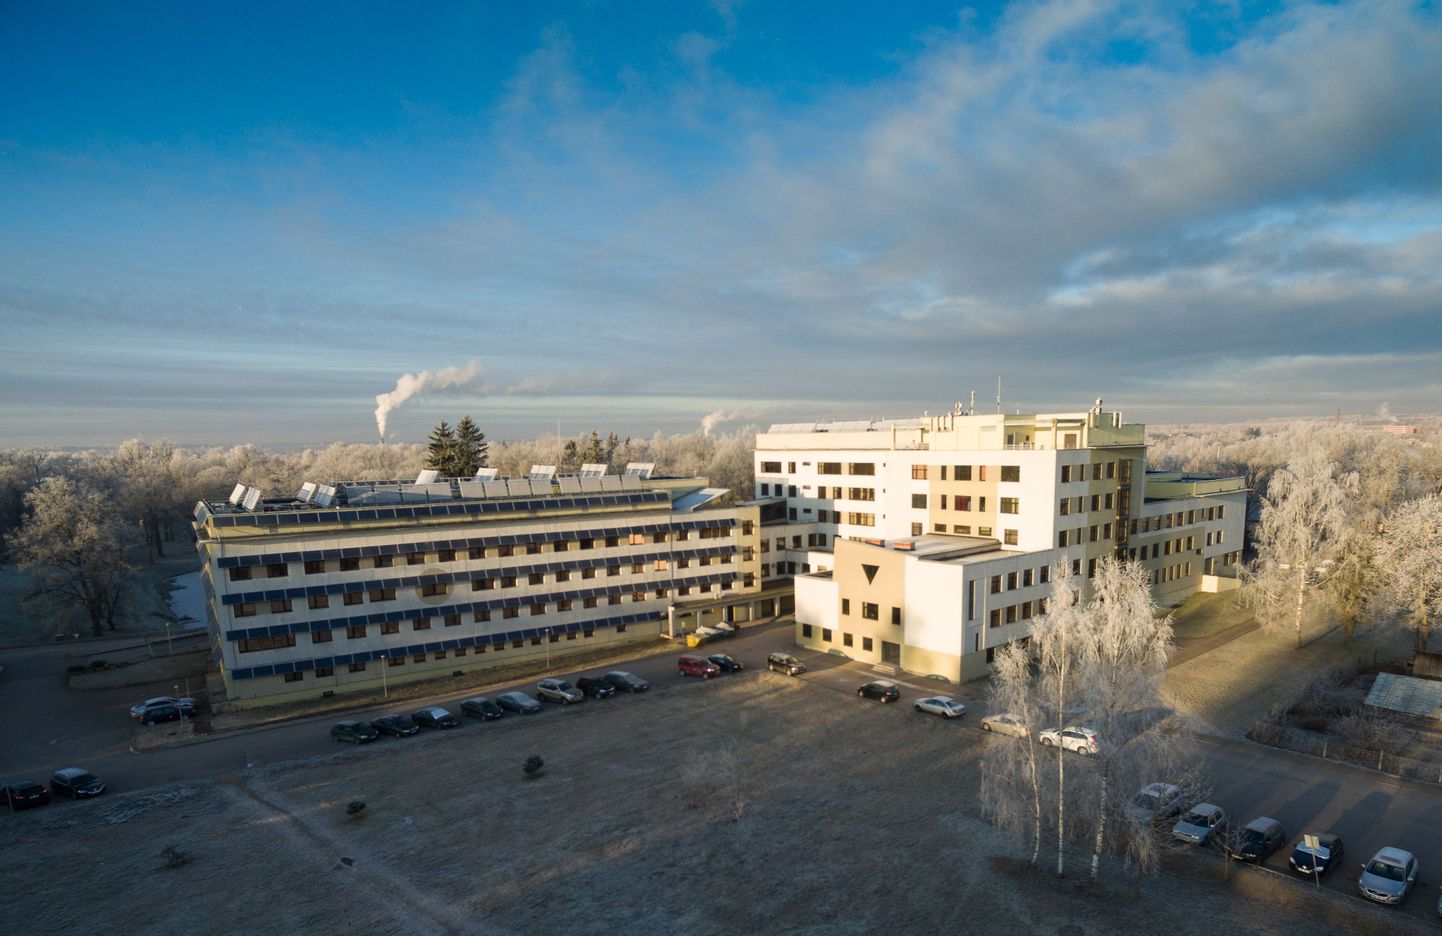 Tartu Ülikooli kliinikum omandab 51 protsenti Valga haigla aktsiatest. Haigla jätkab esialgu samade teenustega ning samaks jääb ka töötajate arv.